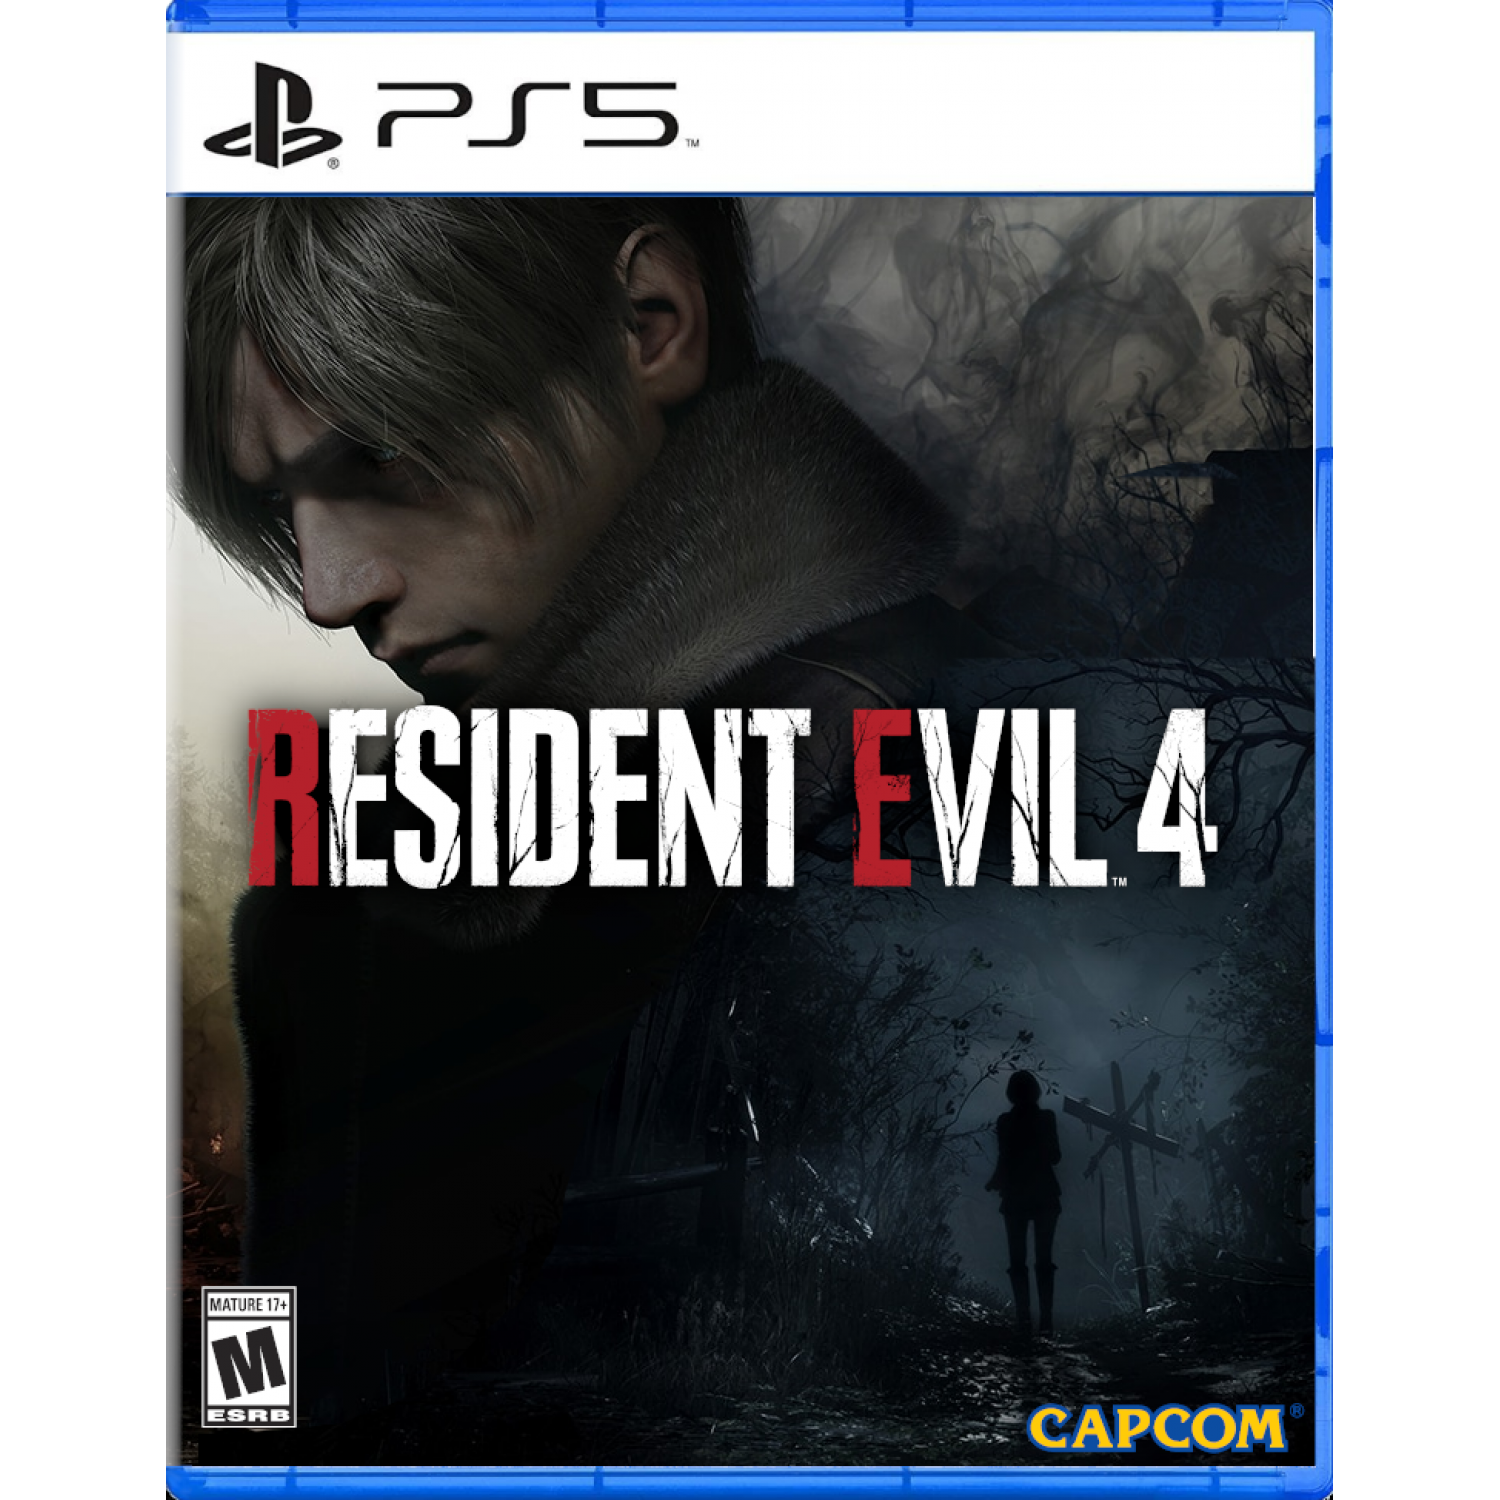 خرید Resident Evil 4 Remake از فروشگاه اگزو گیم